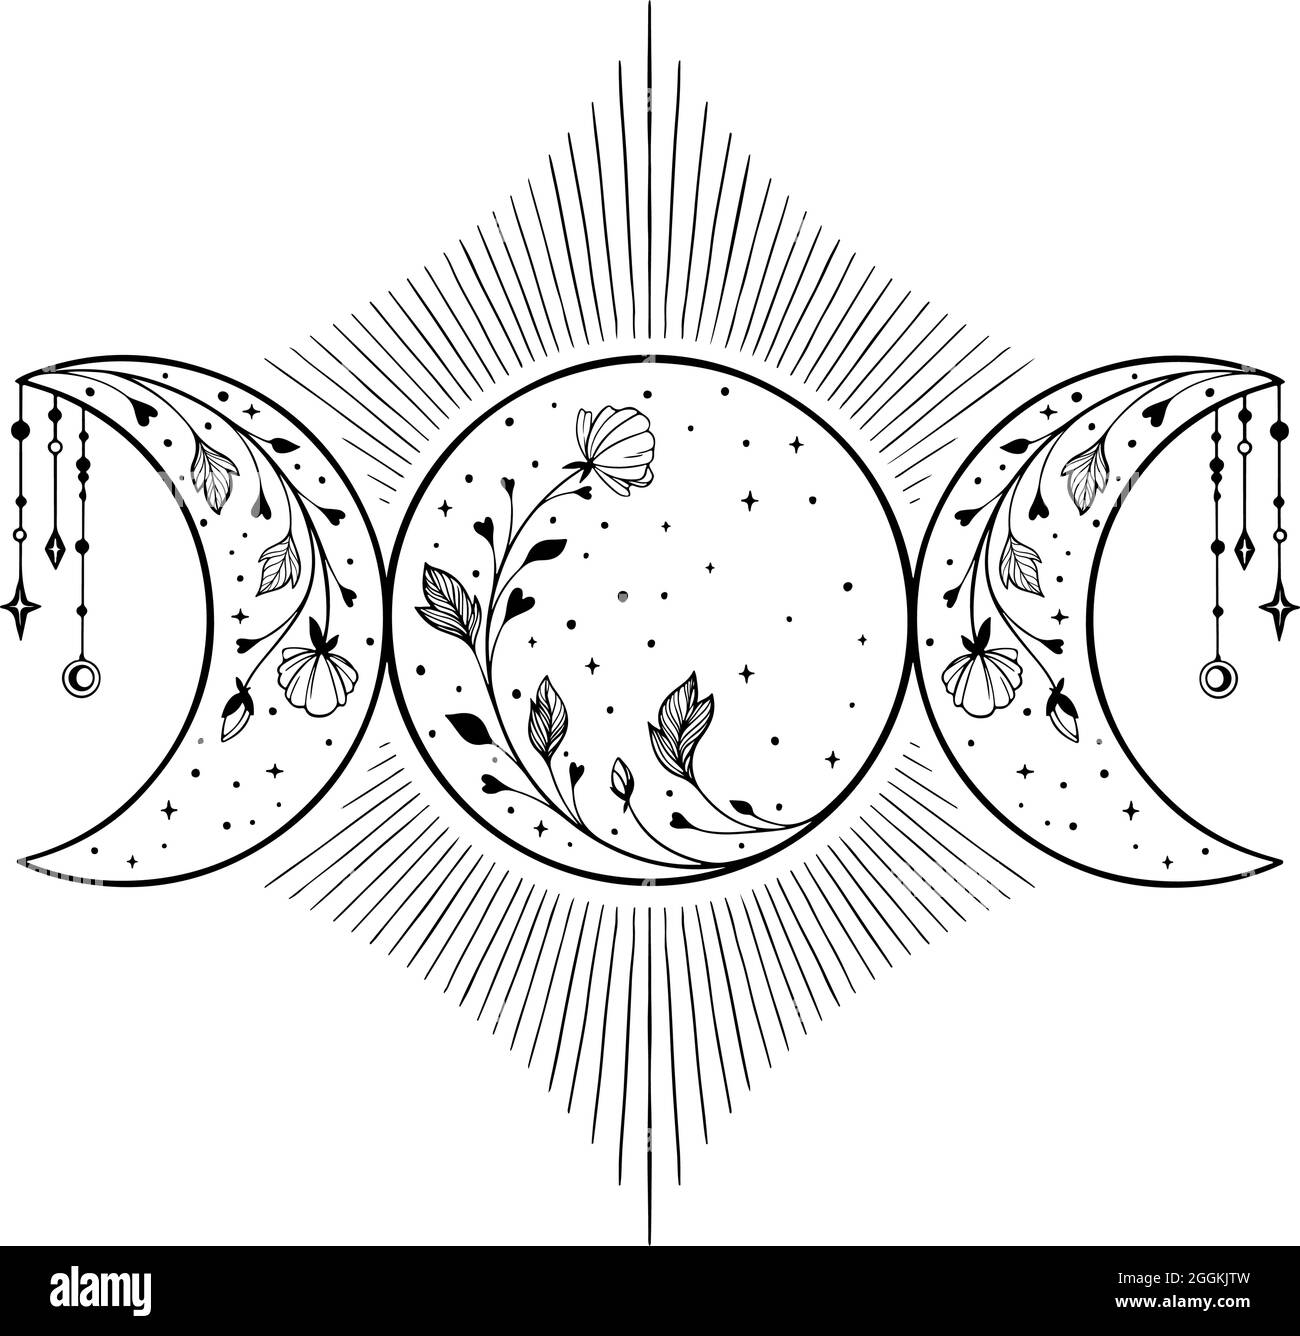 Dreifaches Mondsymbol mit Blumen und Sternen Stock Vektor